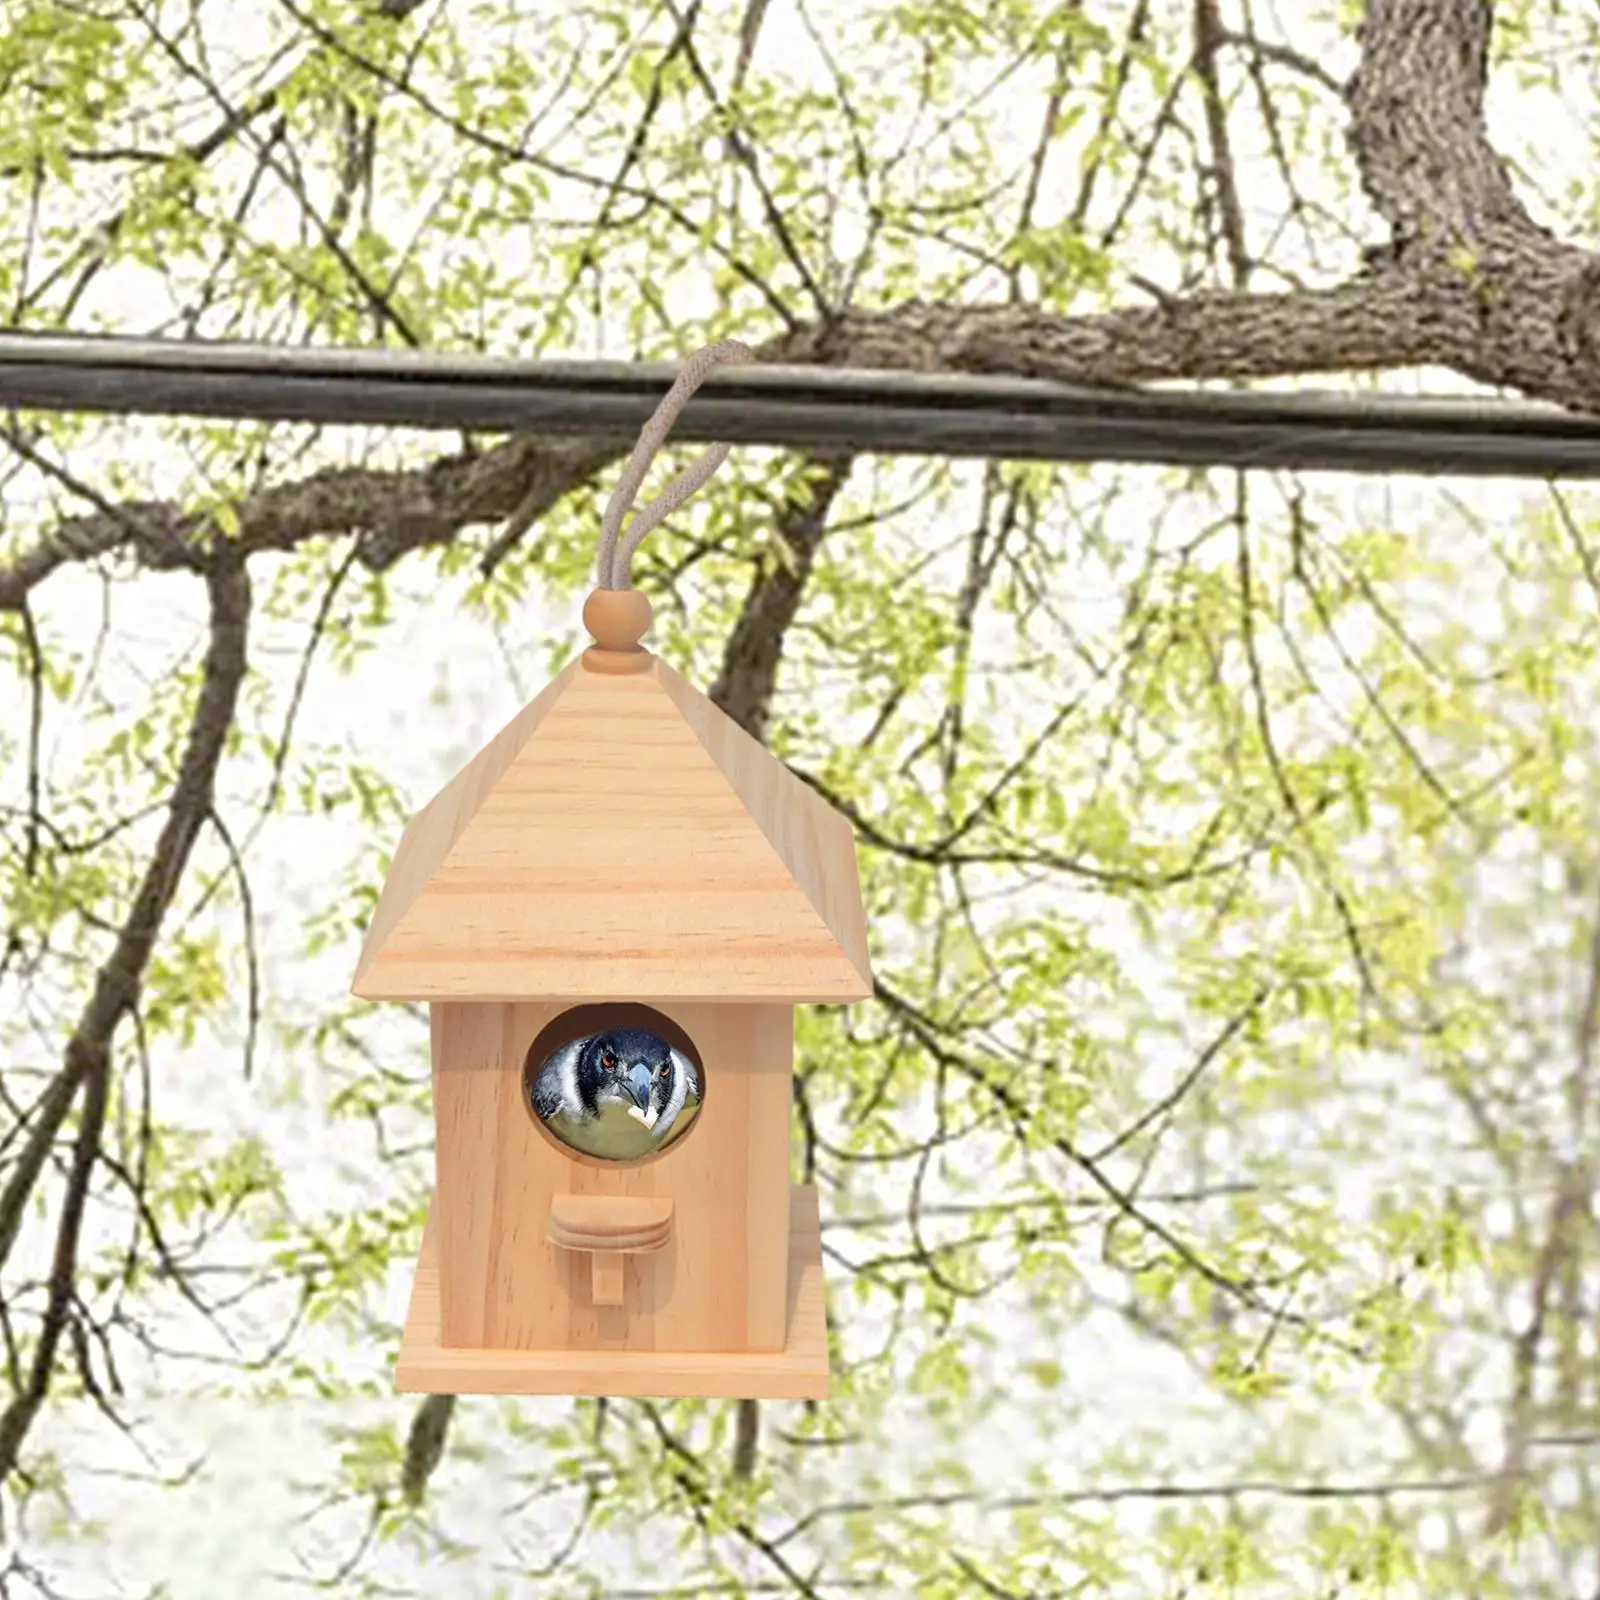 Wooden Birdhouse DIY Arts Crafts with Viewing Window Wood Decoration Birdcage for Yard Garden Backyard Children Adult Wild Bird